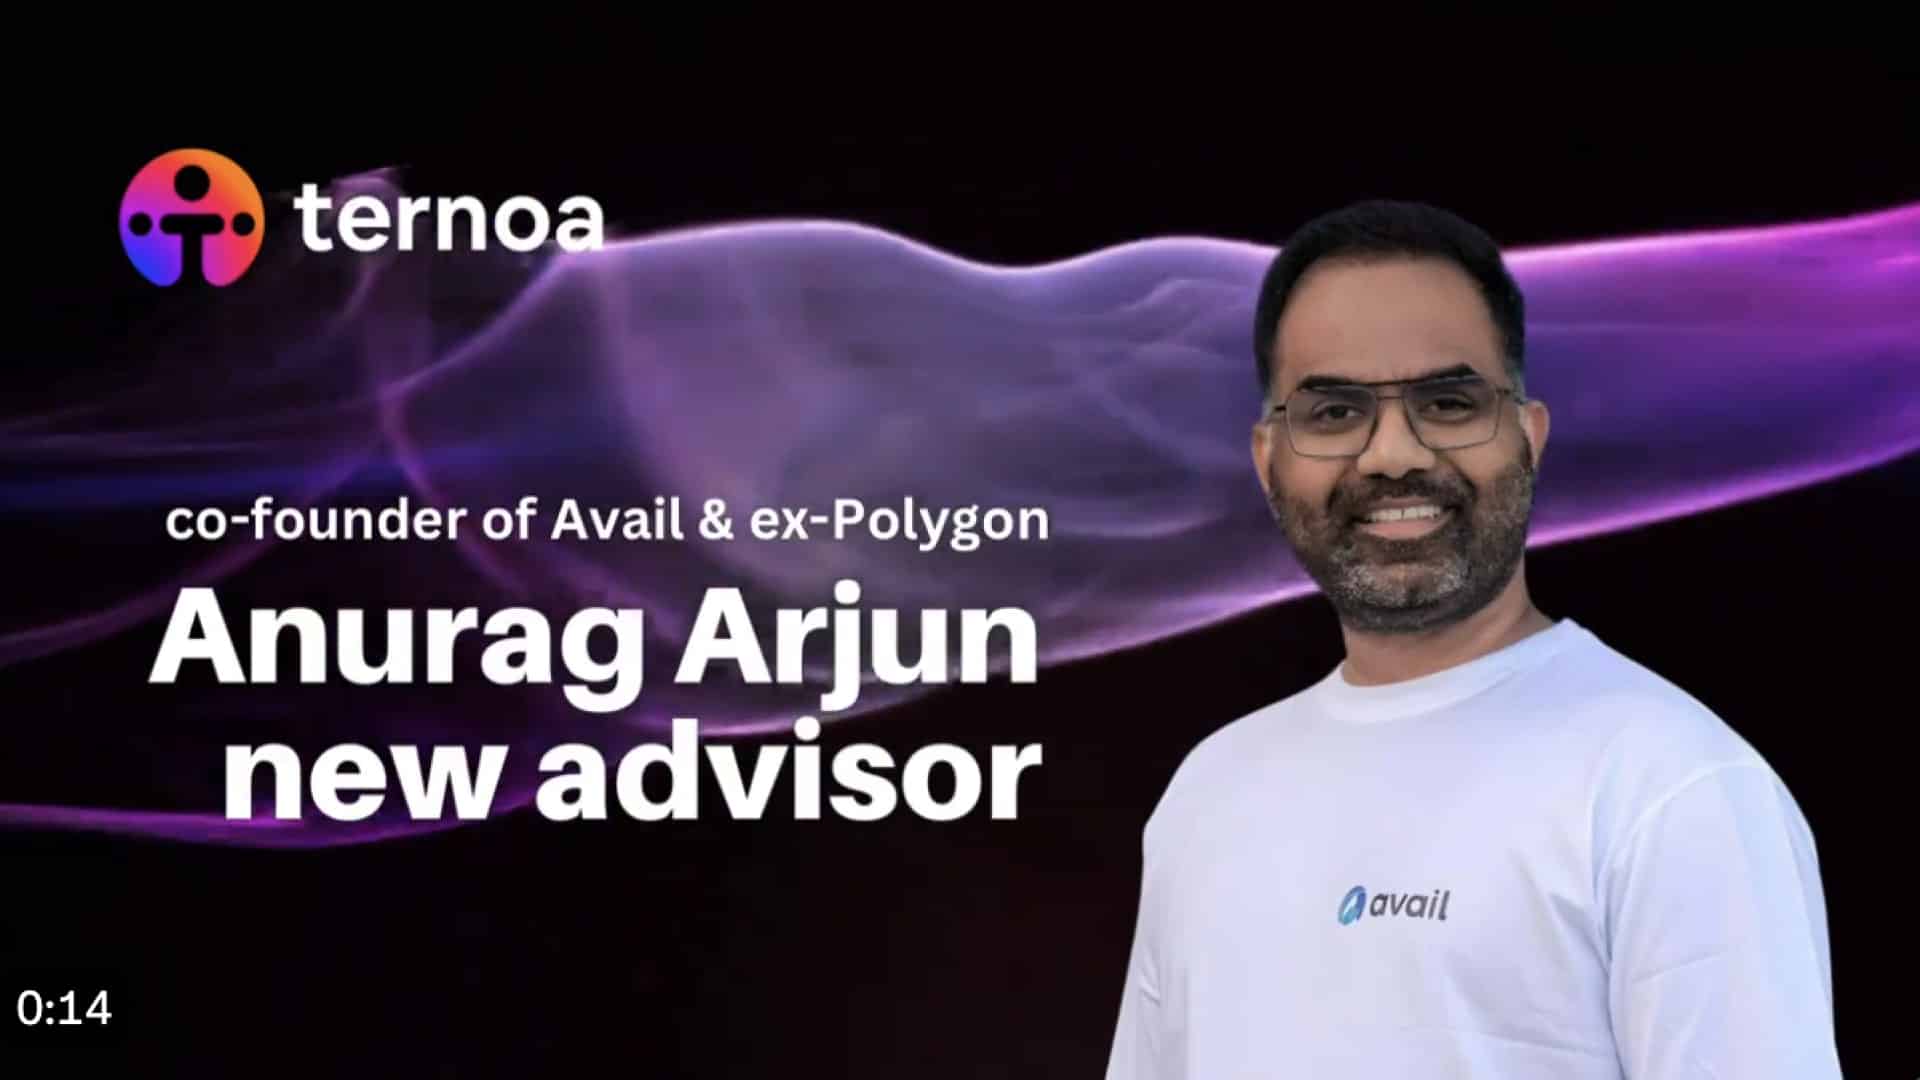 Anurag Arjun, cofondateur de Polygon et d’Avail, rejoint Ternoa en tant que conseiller stratégique